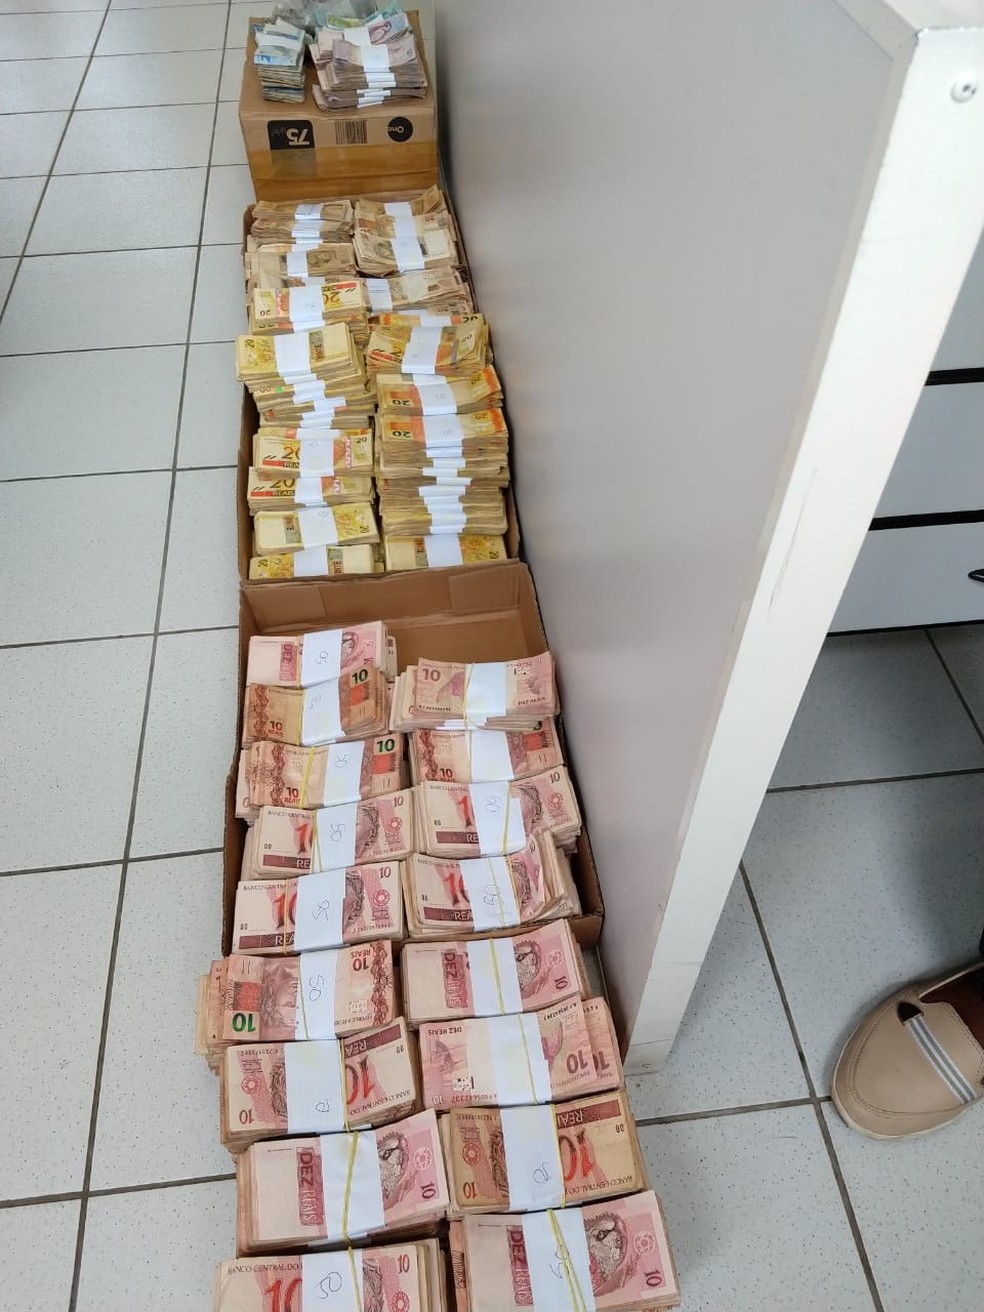 Dinheiro apreendido em operação da MP que investiga fraudes no Detran. — Foto: Ministério Público/Divulgação